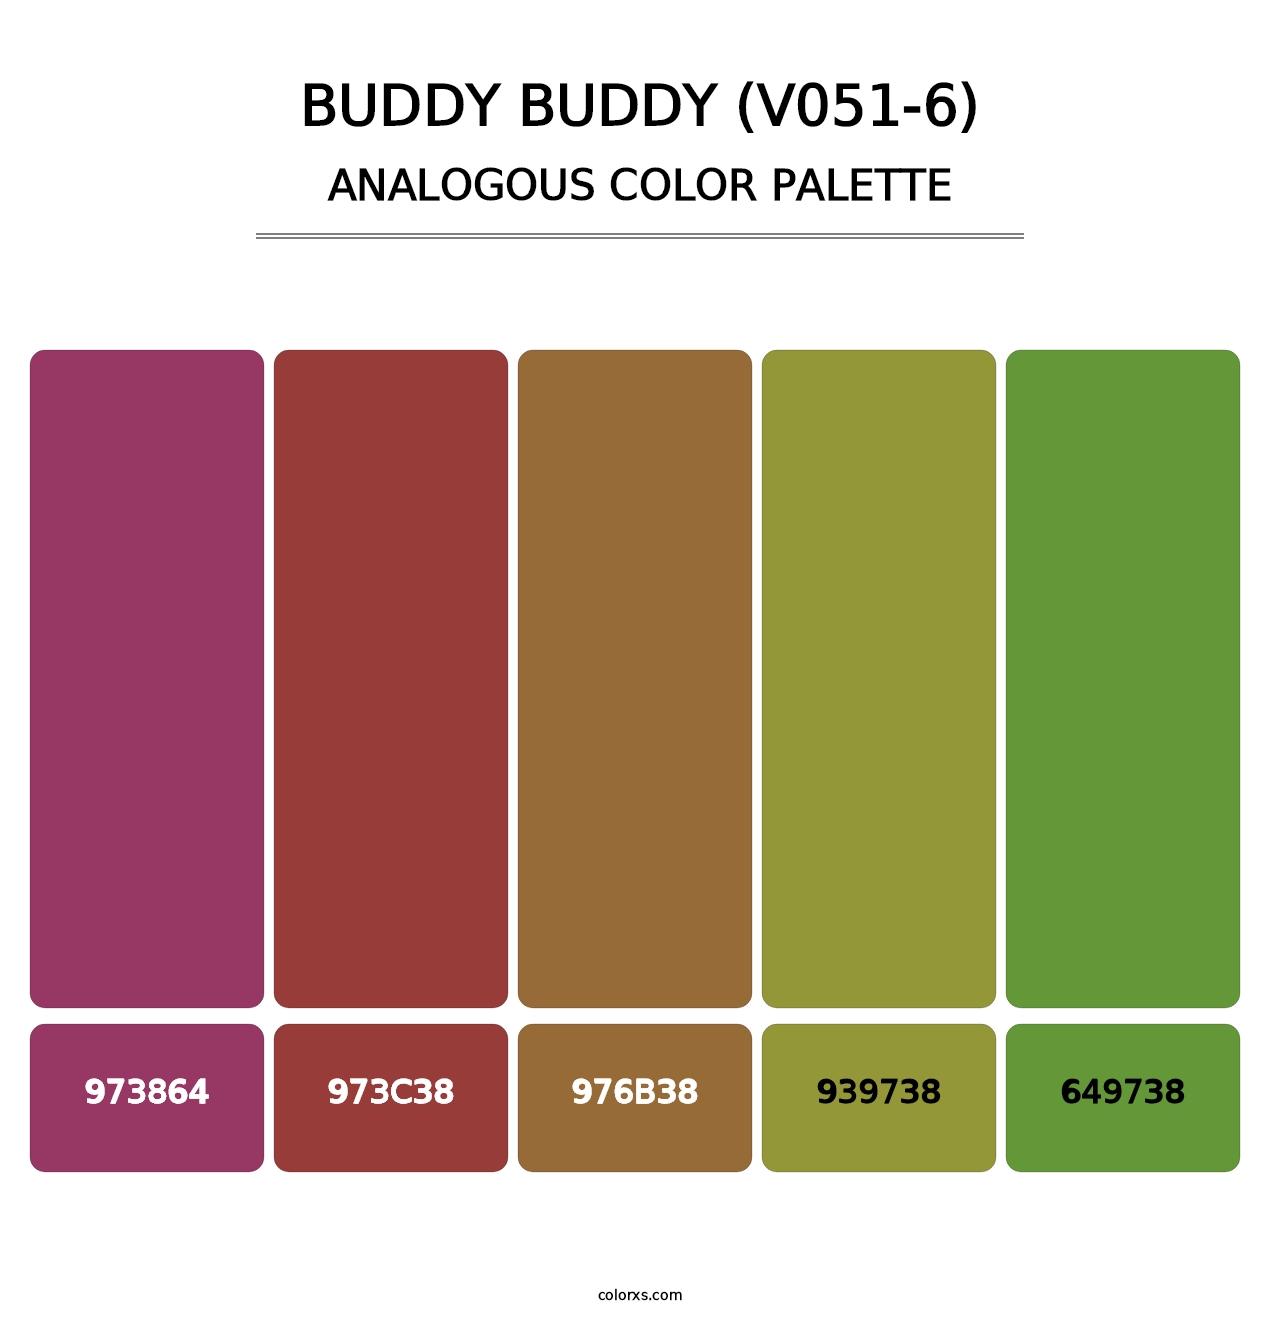 Buddy Buddy (V051-6) - Analogous Color Palette